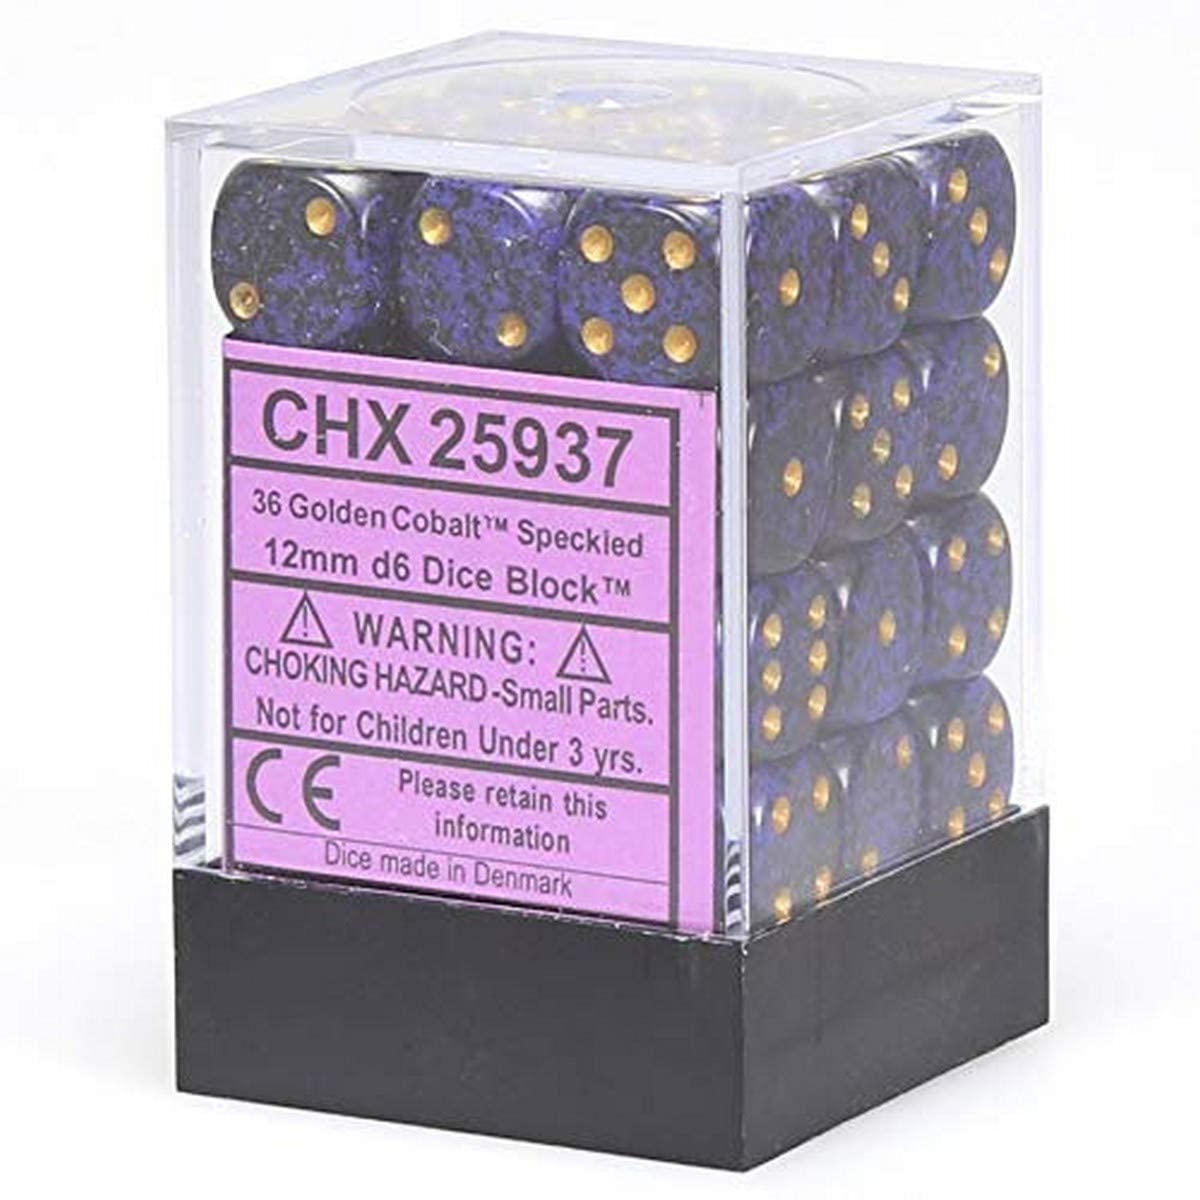 Chessex Dice: D6 Block 12mm - Speckled - Golden Cobalt (CHX 25937) - Gamescape